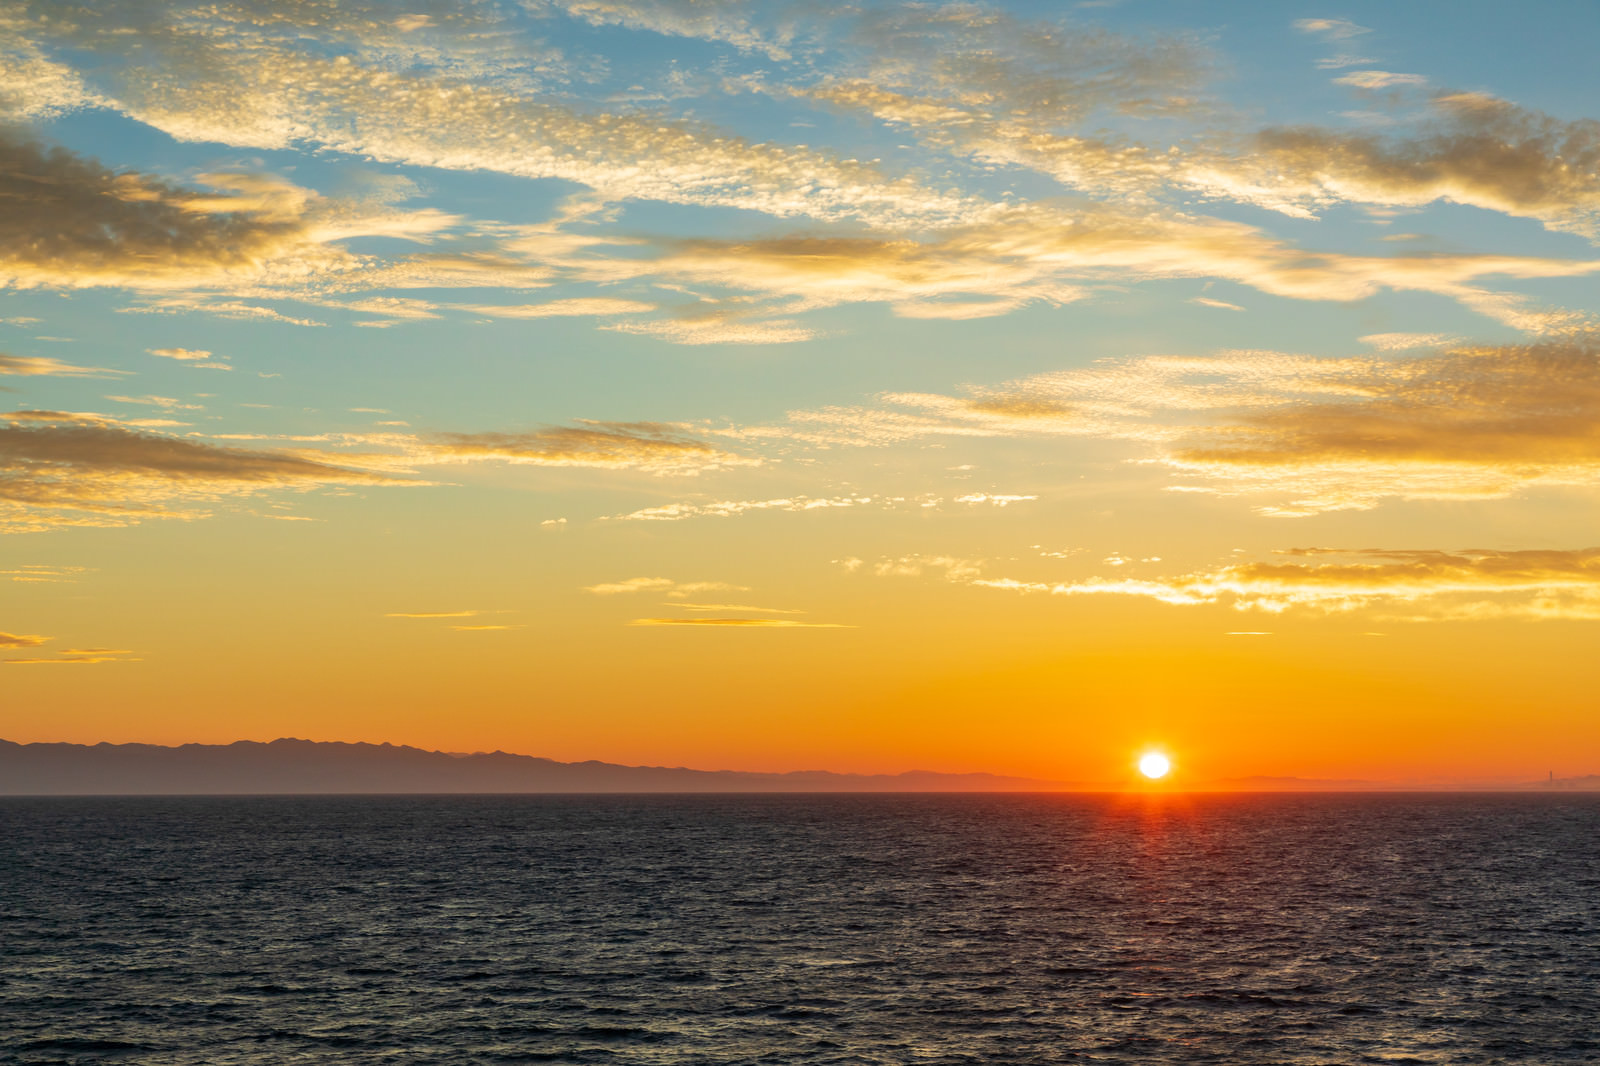 「日本海の夜明けと日の出 | フリー素材のぱくたそ」の写真